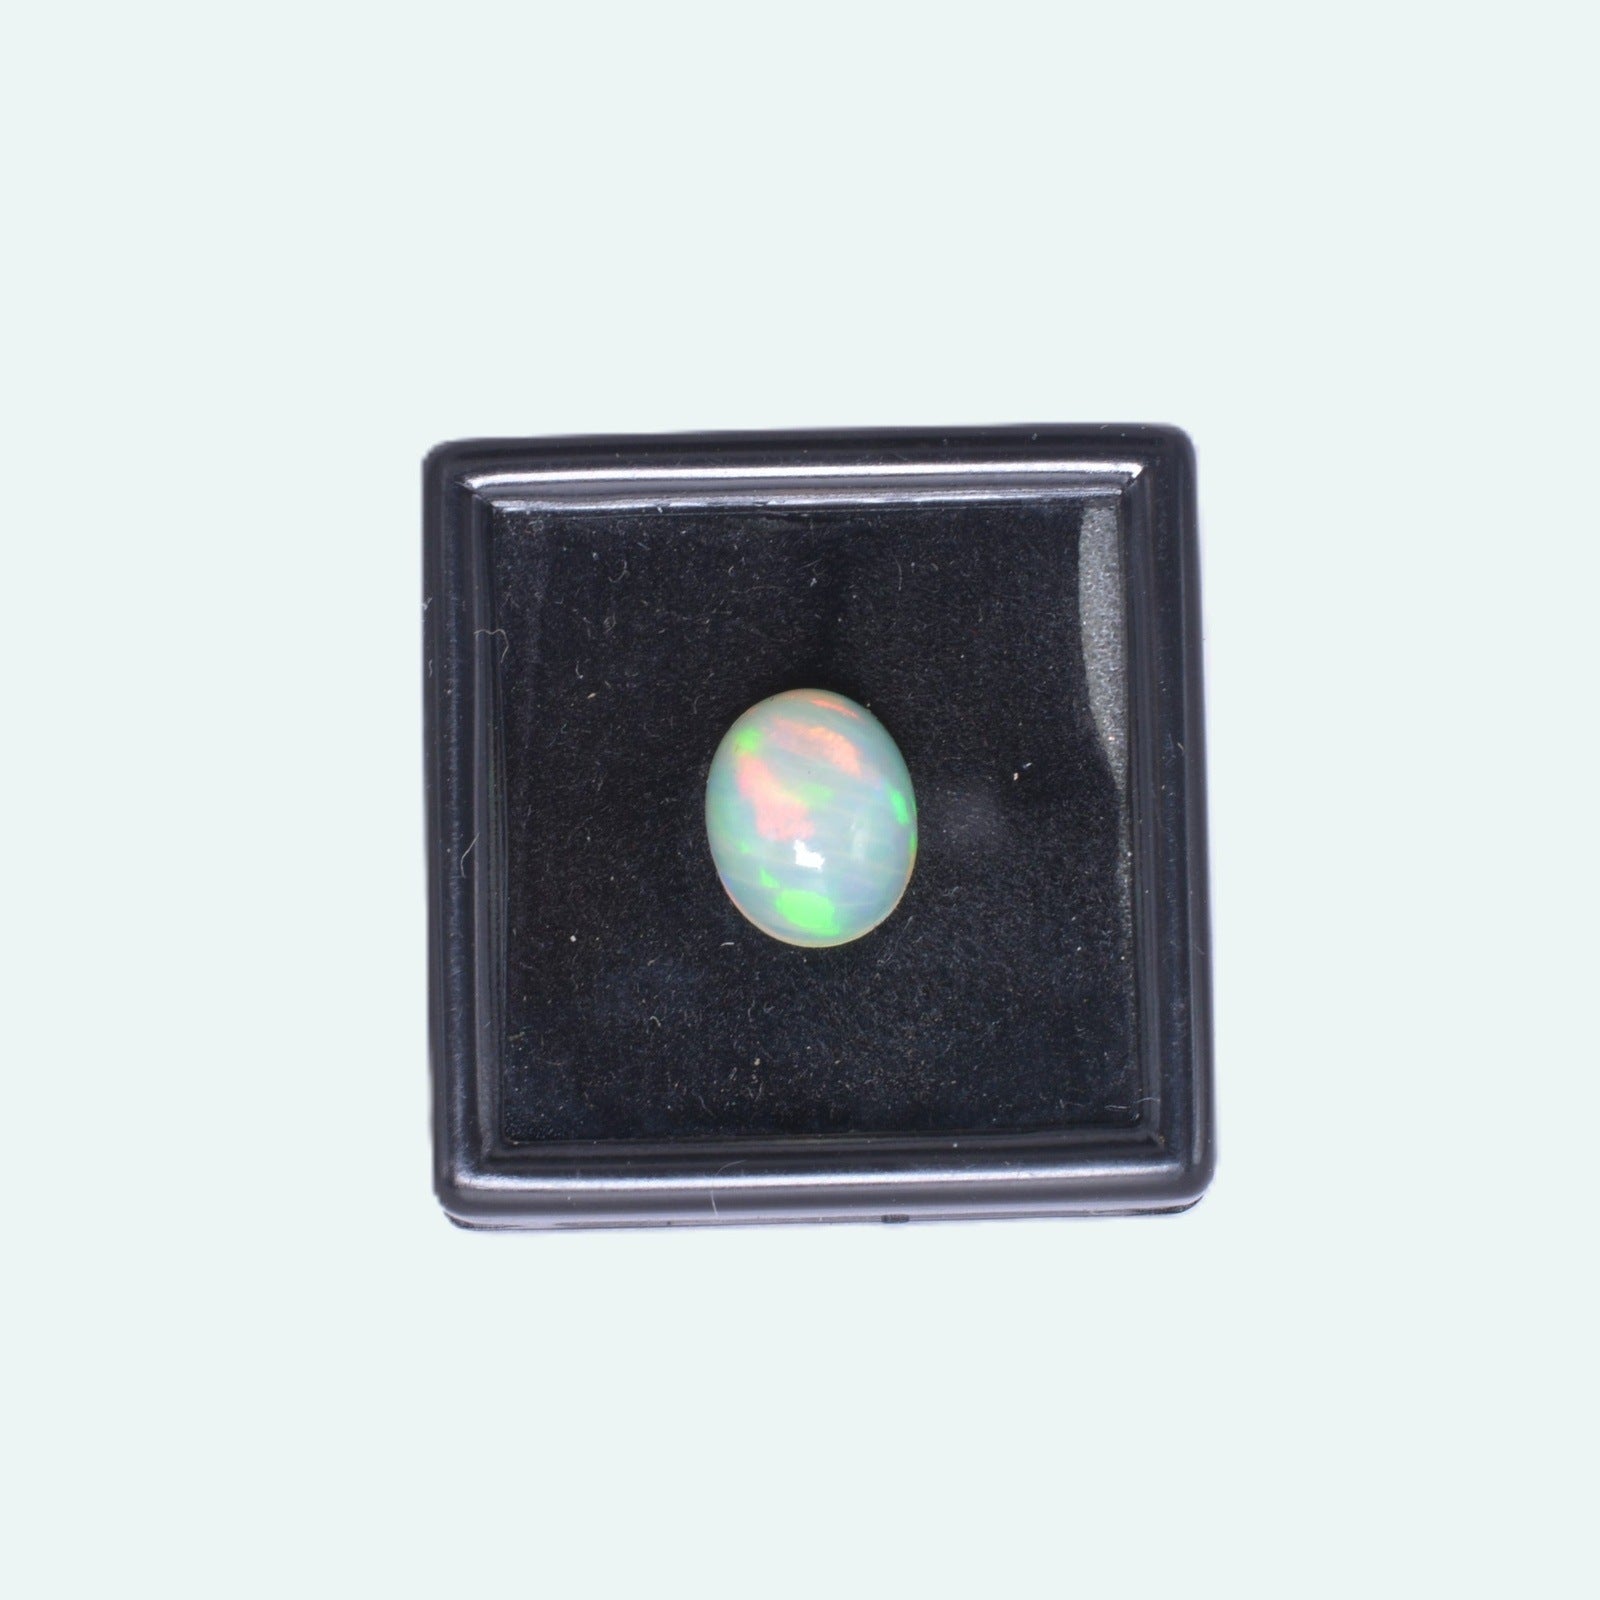 Opale 1,88ct - pierre précieuse - gemme